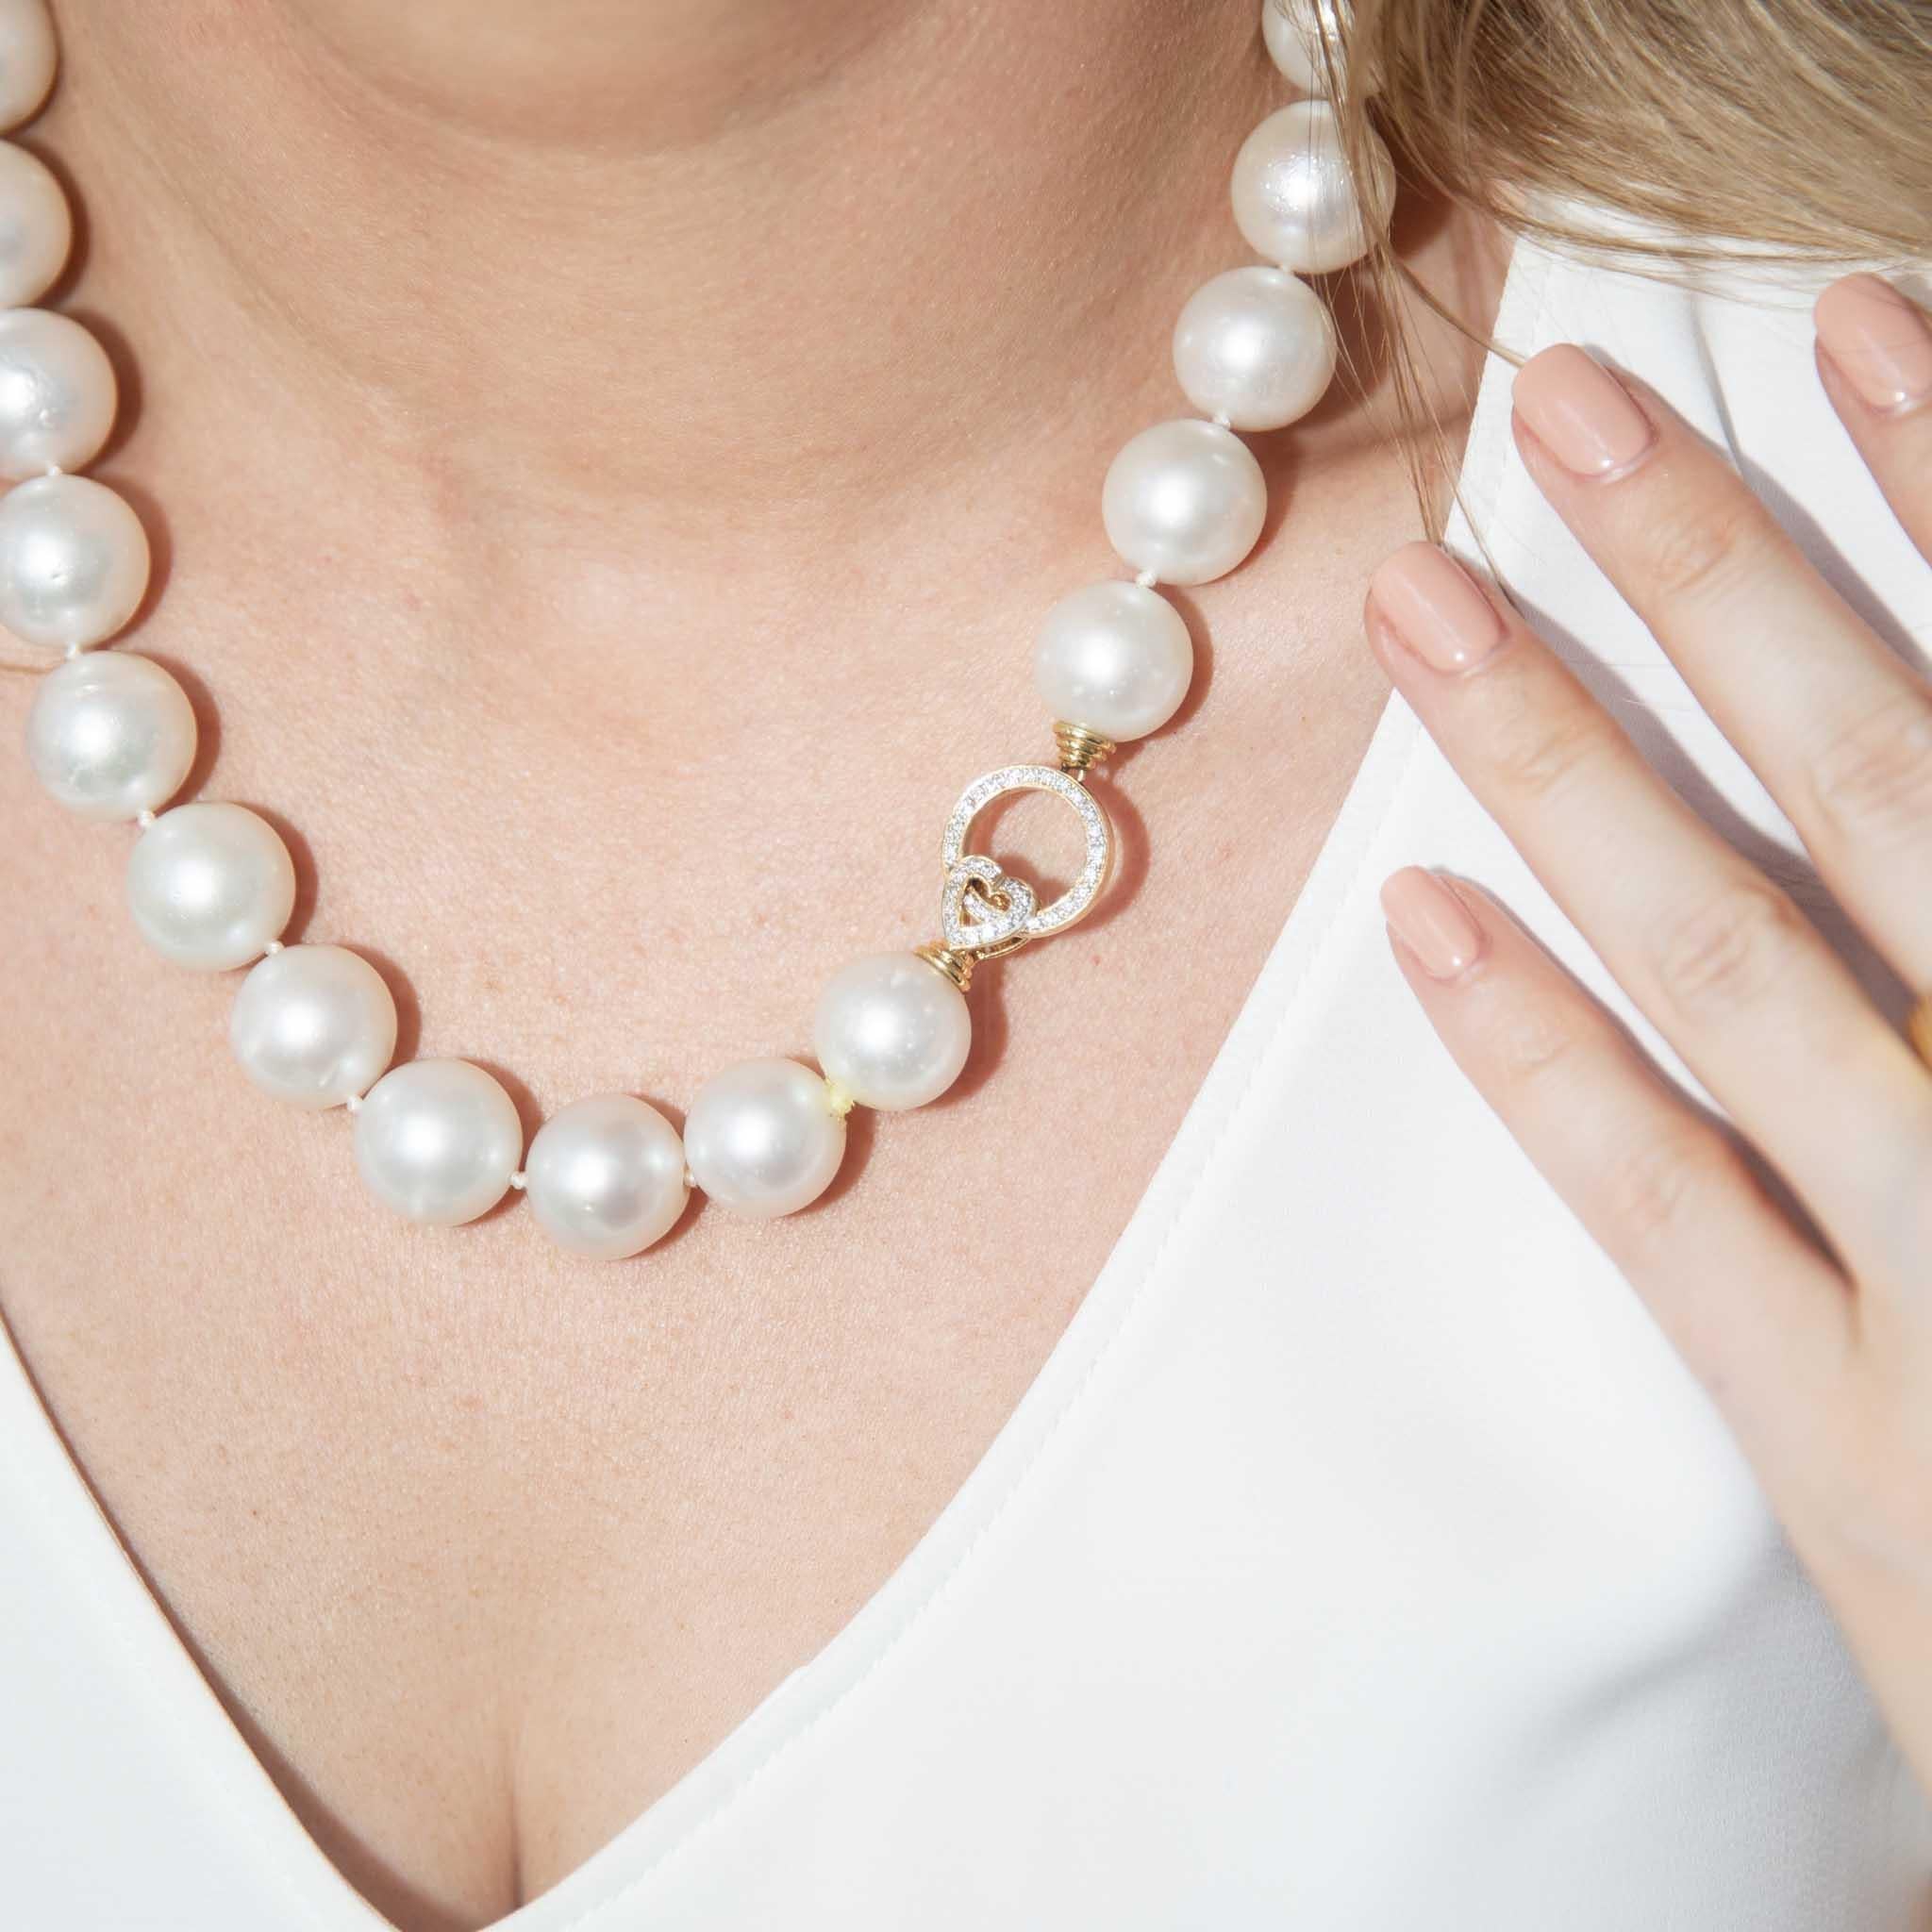 Dieser wunderschöne Strang runder weißer Südseeperlen ist mit Bedacht aufgereiht und trägt den Namen Helmi. Sie eignet sich perfekt für den Alltag und ist mit einer hübschen diamantbesetzten Schließe versehen, die die Perlen perfekt ergänzt. 

Die